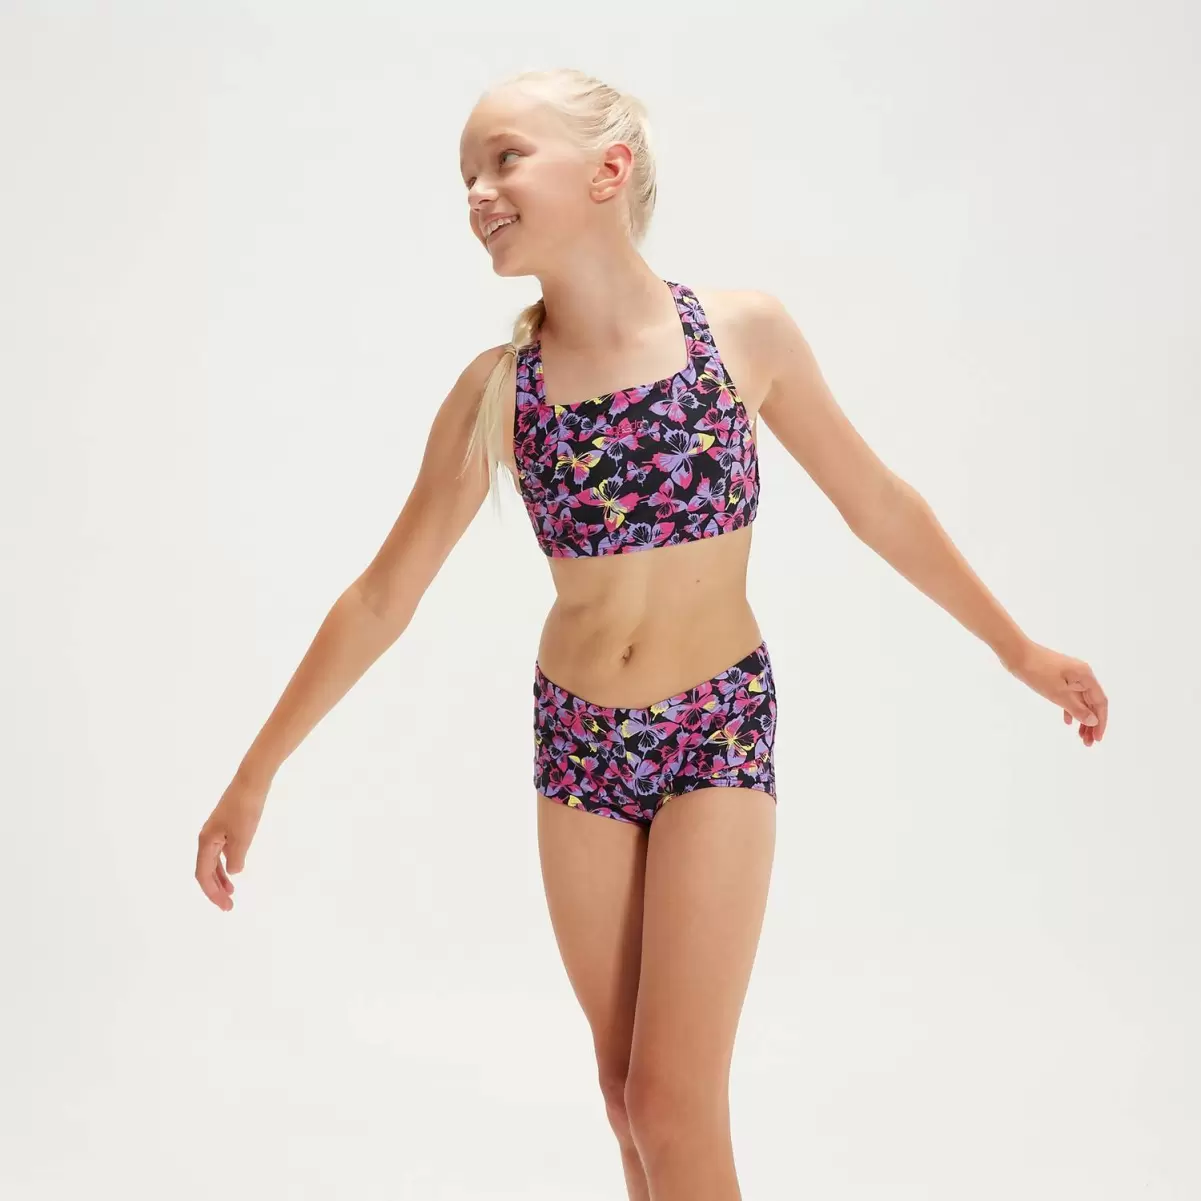 Speedo Kinder Bedruckter Bikini Mit Längerem Bein Für Mädchen Schwarz/Pink Mädchen Bademode